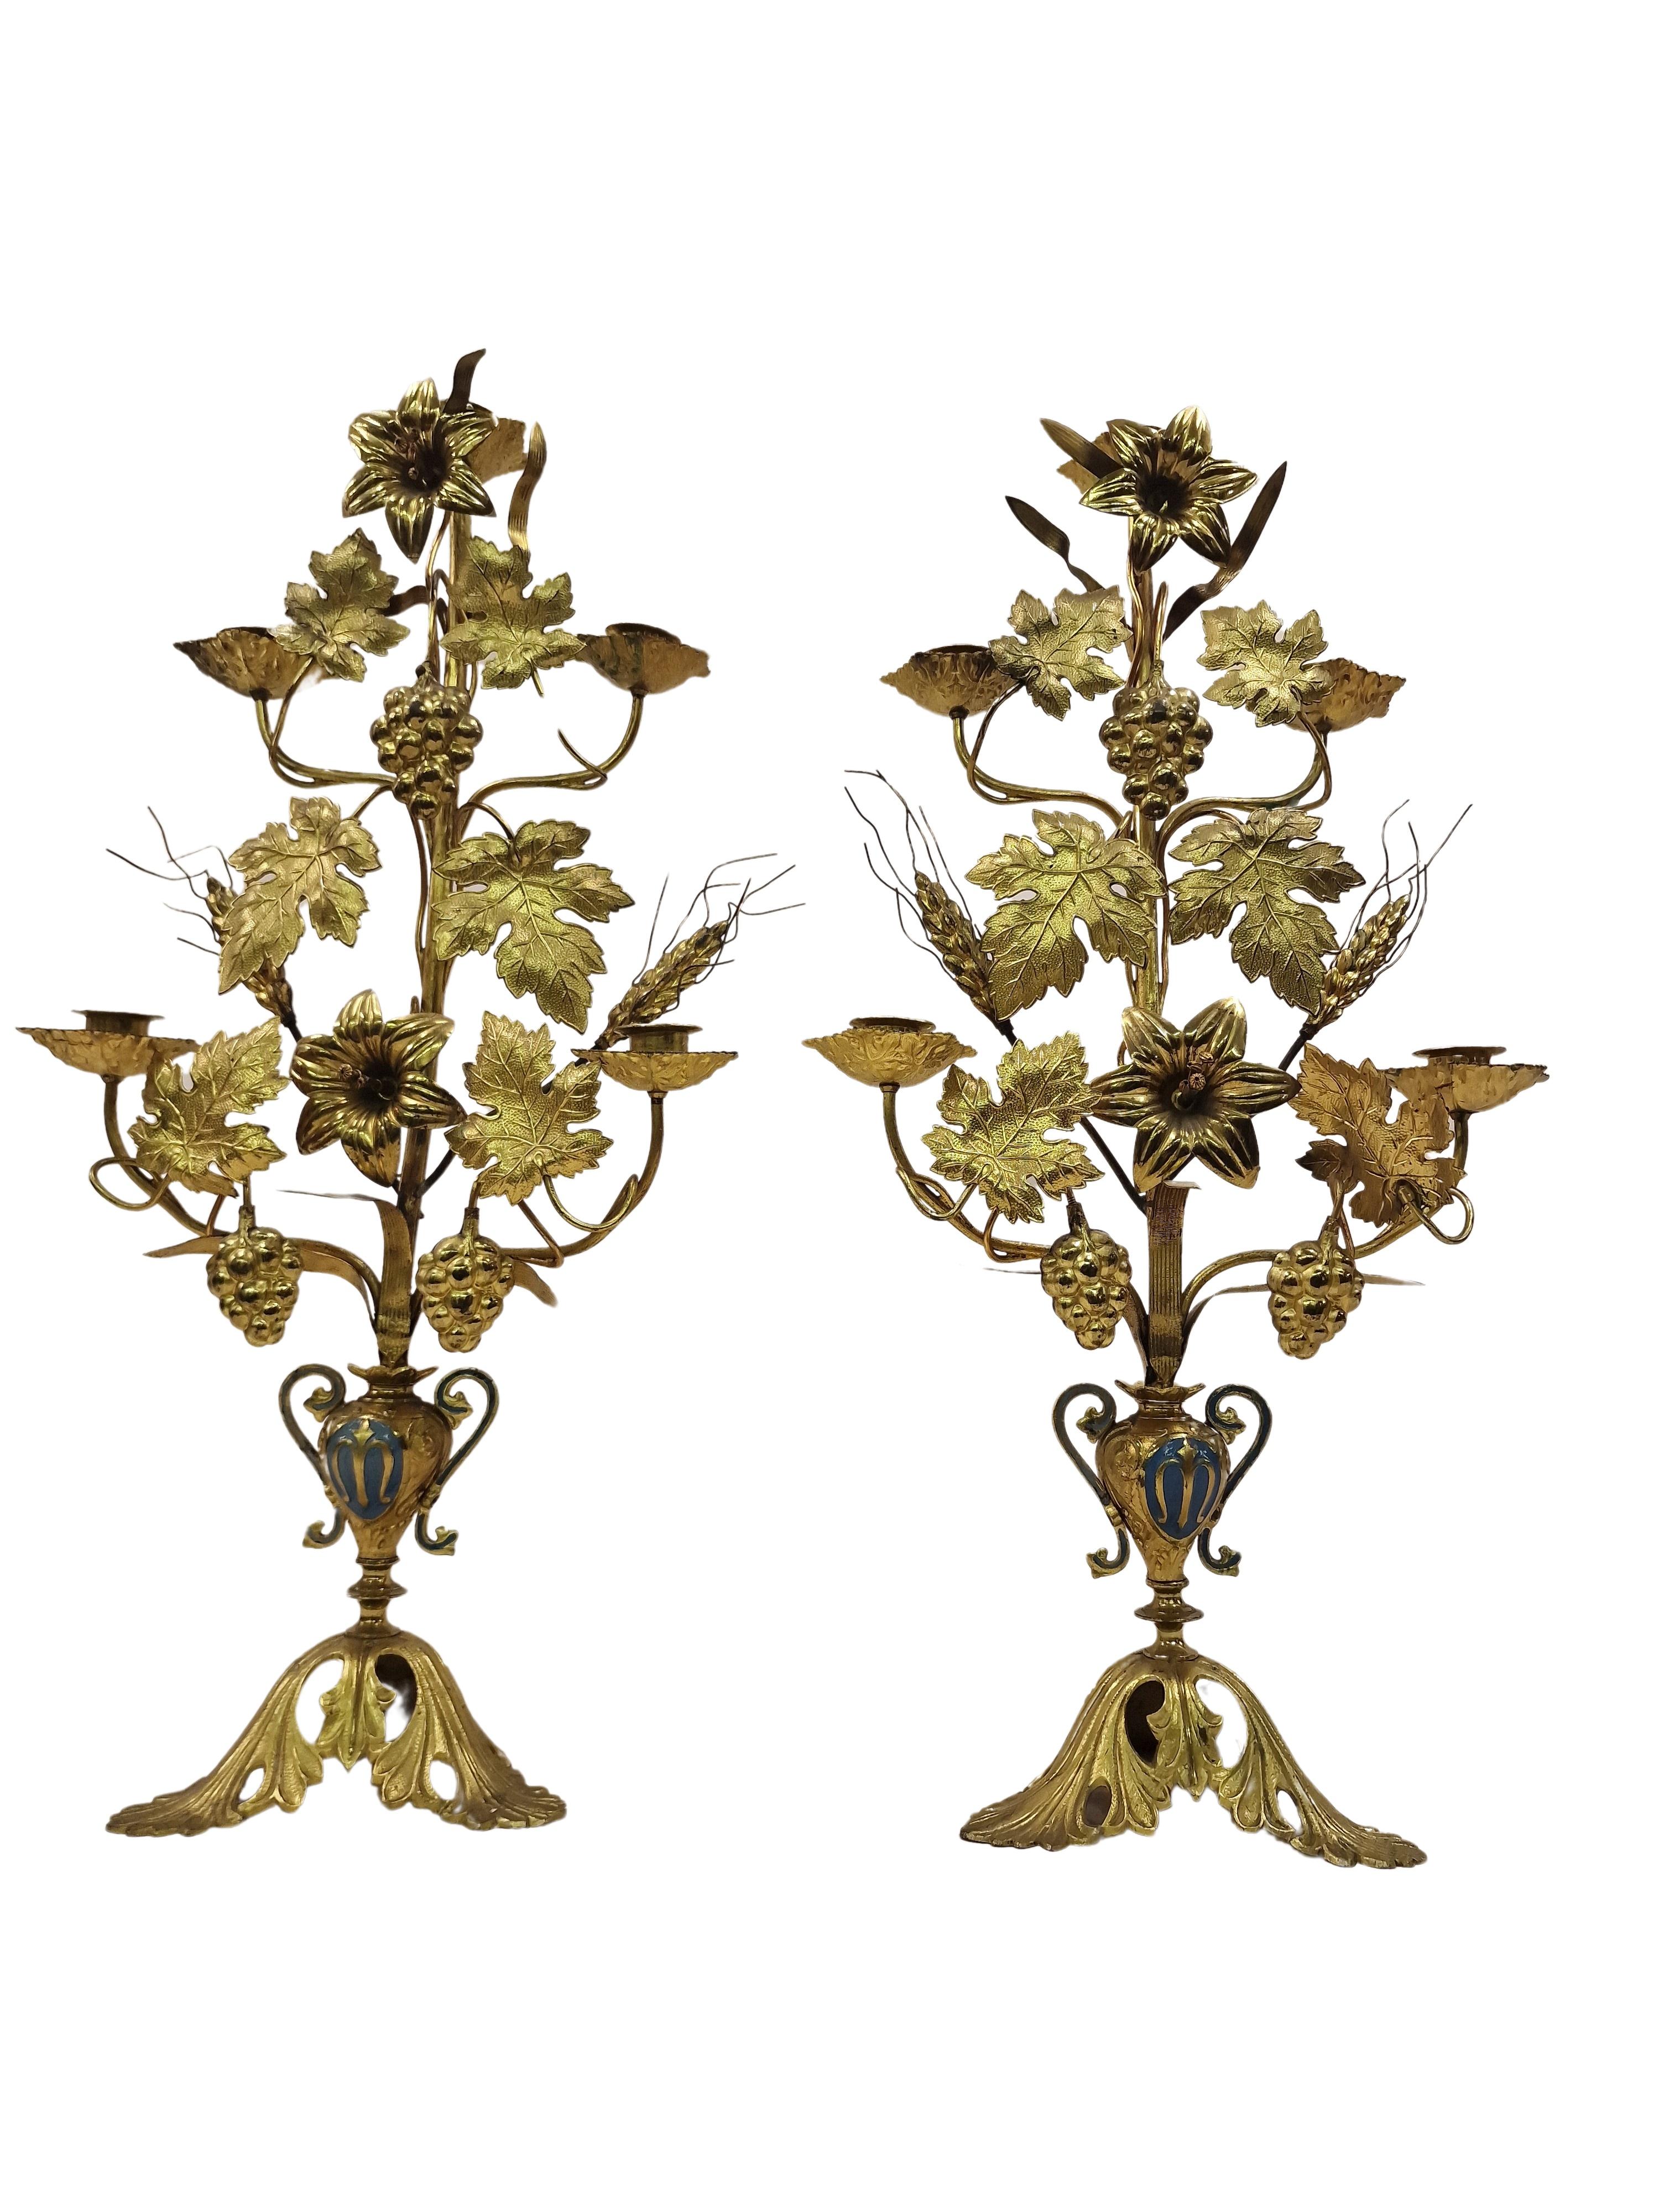 Zwei wunderbare Erntedank-Kerzenhalter aus feuervergoldetem Messing, hergestellt um 1900 in Frankreich. 

Kerzenständer wie diese wurden in der Kirche zum Dank aufgestellt. Die Objekte sind sehr dekorativ und bestehen aus einem Sockel, der als